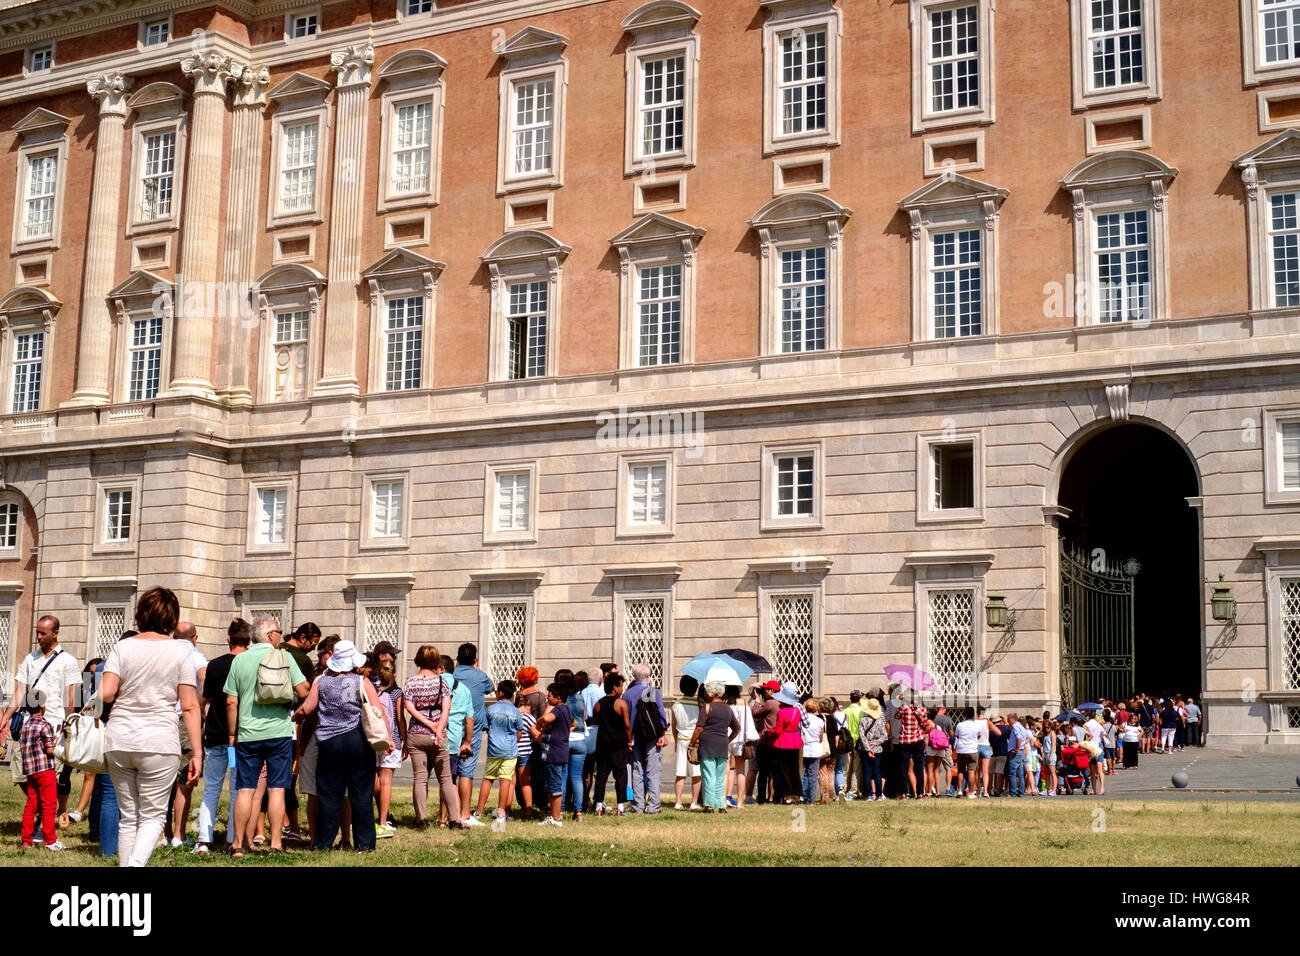 Caserta, Italie - 24 août 2016 - File d'attente de touristes devant le Palais Royal de Caserte (en italien : Reggia di Caserta) entrée. Banque D'Images